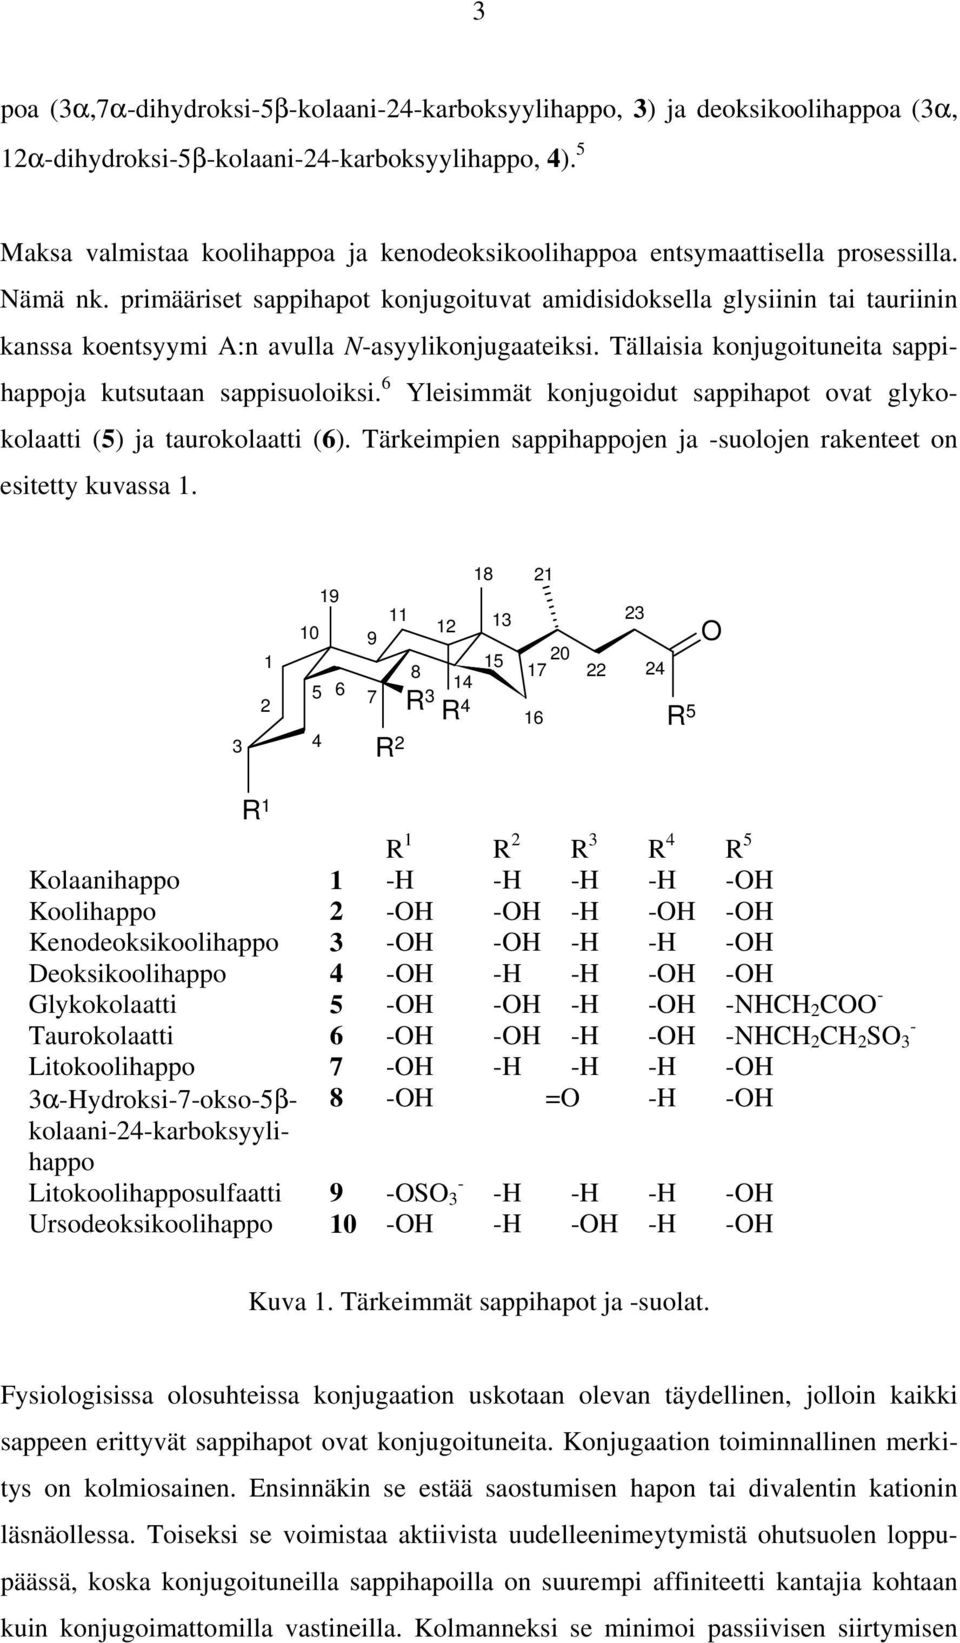 primääriset sappihapot konjugoituvat amidisidoksella glysiinin tai tauriinin kanssa koentsyymi A:n avulla -asyylikonjugaateiksi. Tällaisia konjugoituneita sappihappoja kutsutaan sappisuoloiksi.